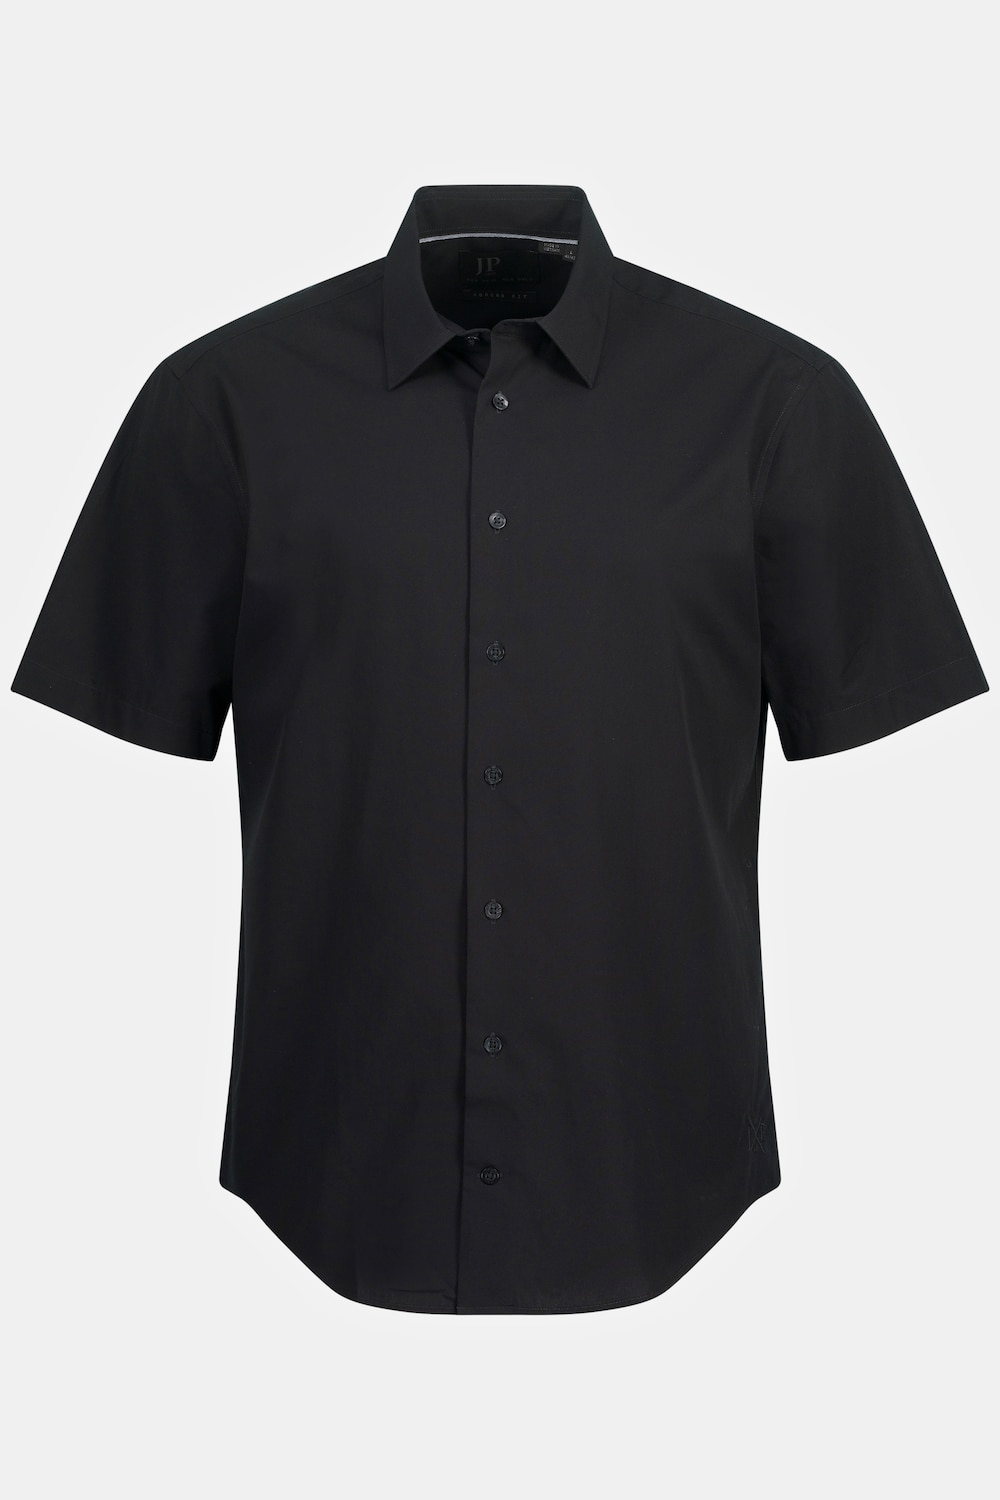 Grote Maten Zakelijk overhemd, Heren, zwart, Maat: XXL, Katoen, JP1880